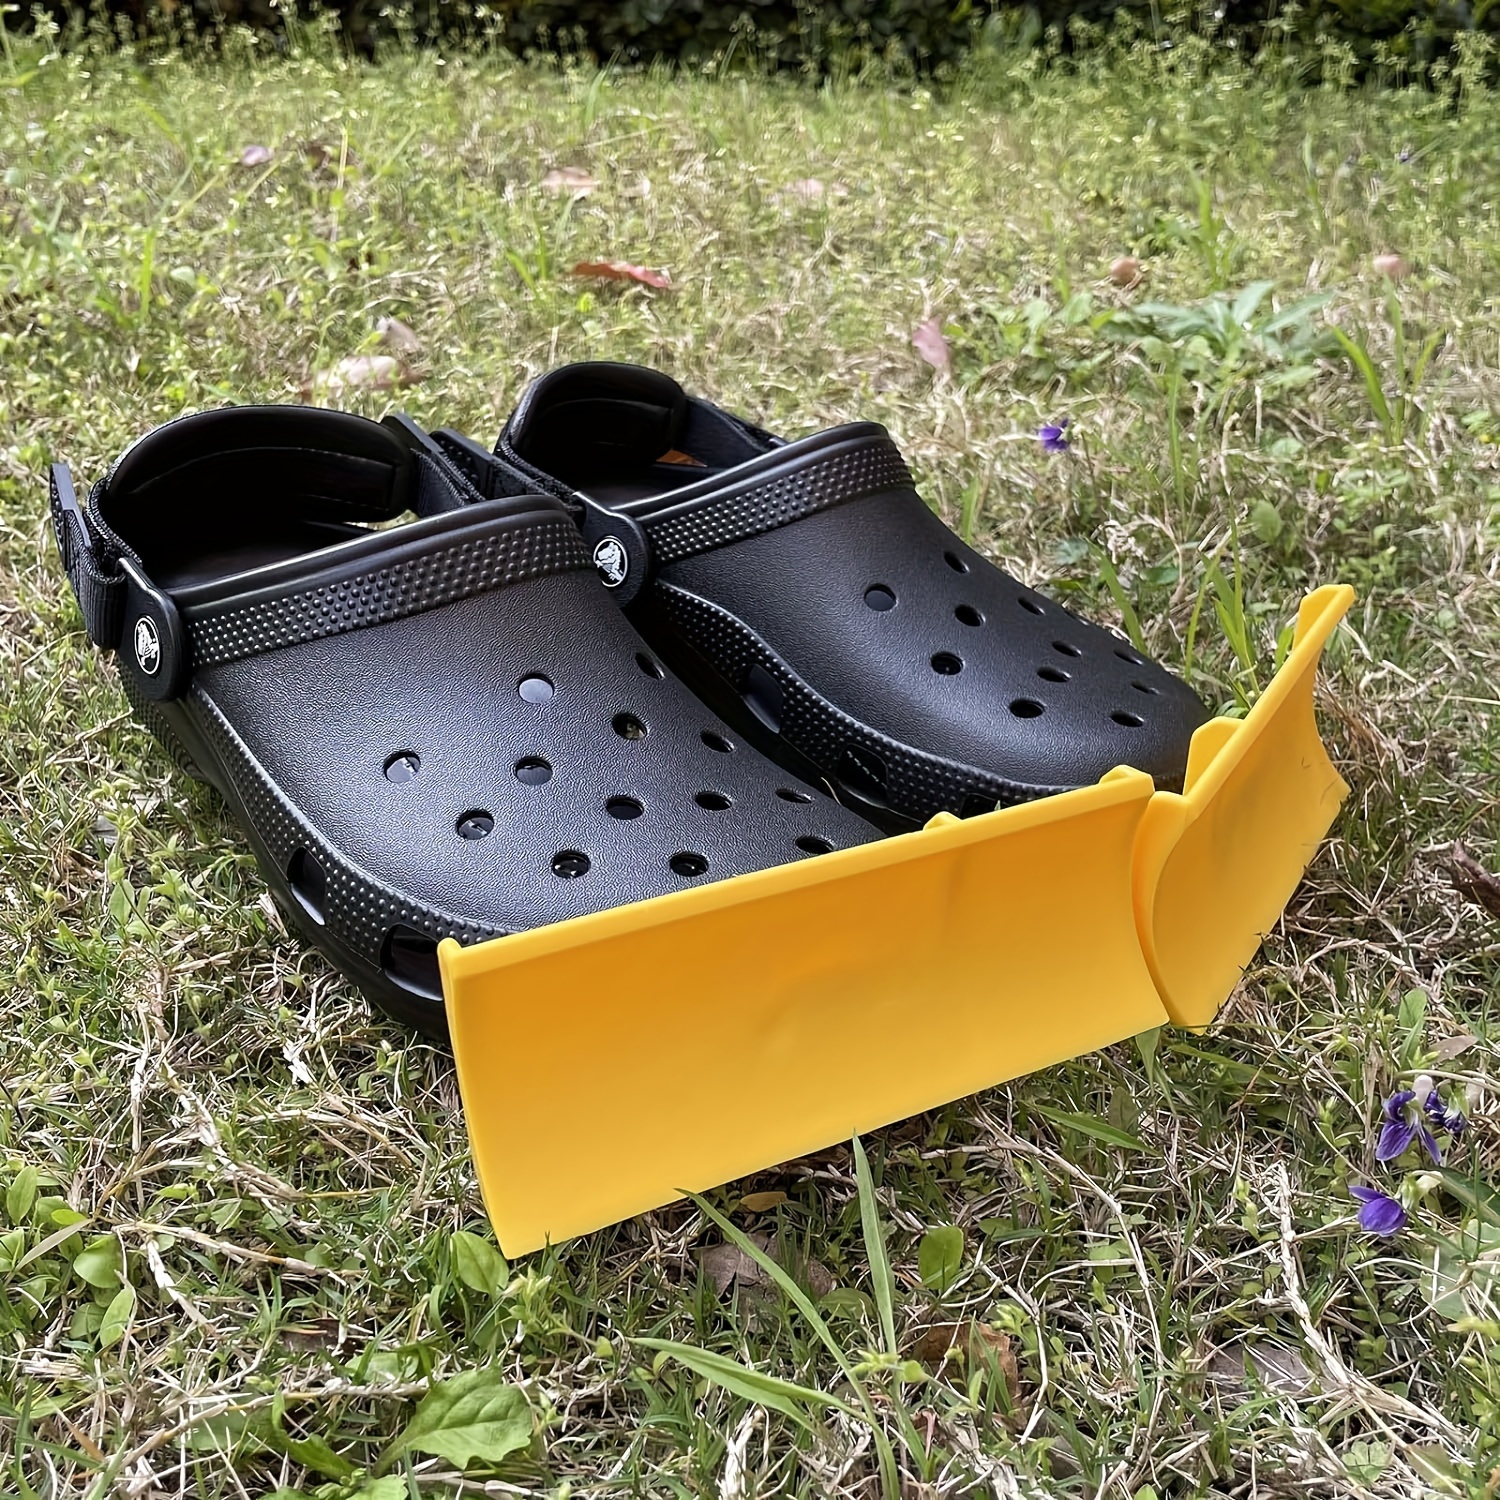 Snow Plow Charm Attachment For Croc Shoe, A Pair Snowplow Croc